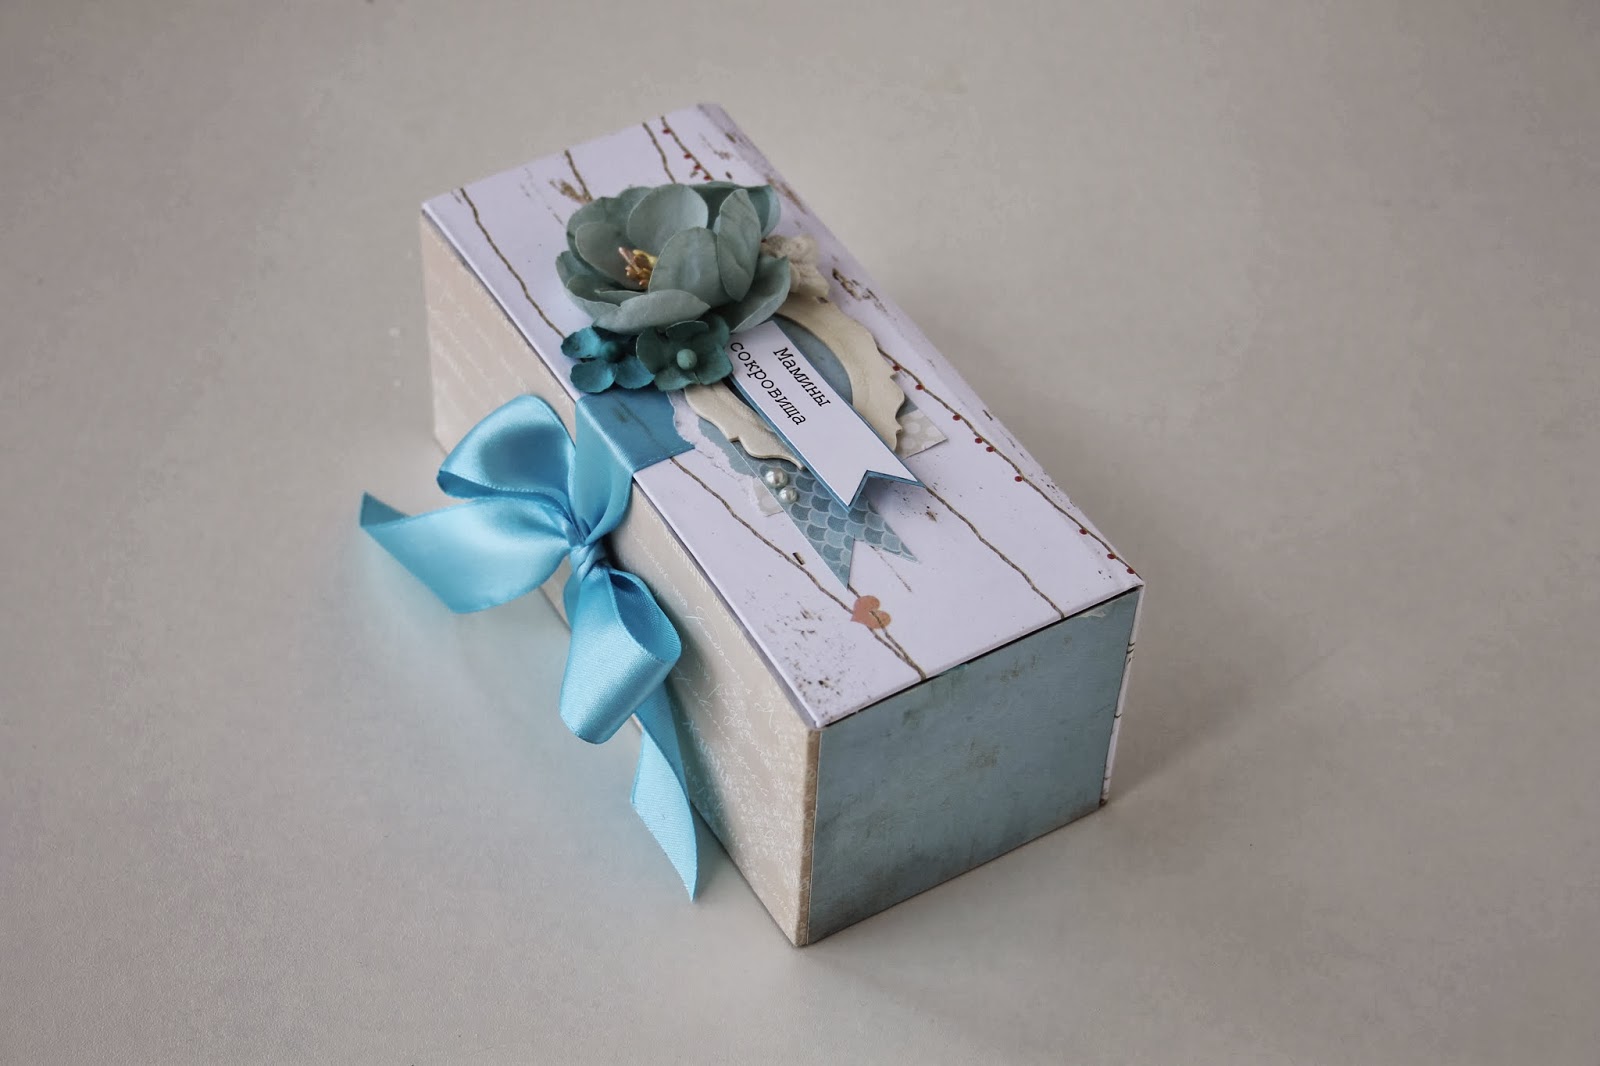 Сделать коробку с бабочками. Как красиво можно оформить коробку карандашами. Как собрать первый локон коробочку. ДОУ сделать коробочки своими руками для секретиков. Сделать коробку на день рождения